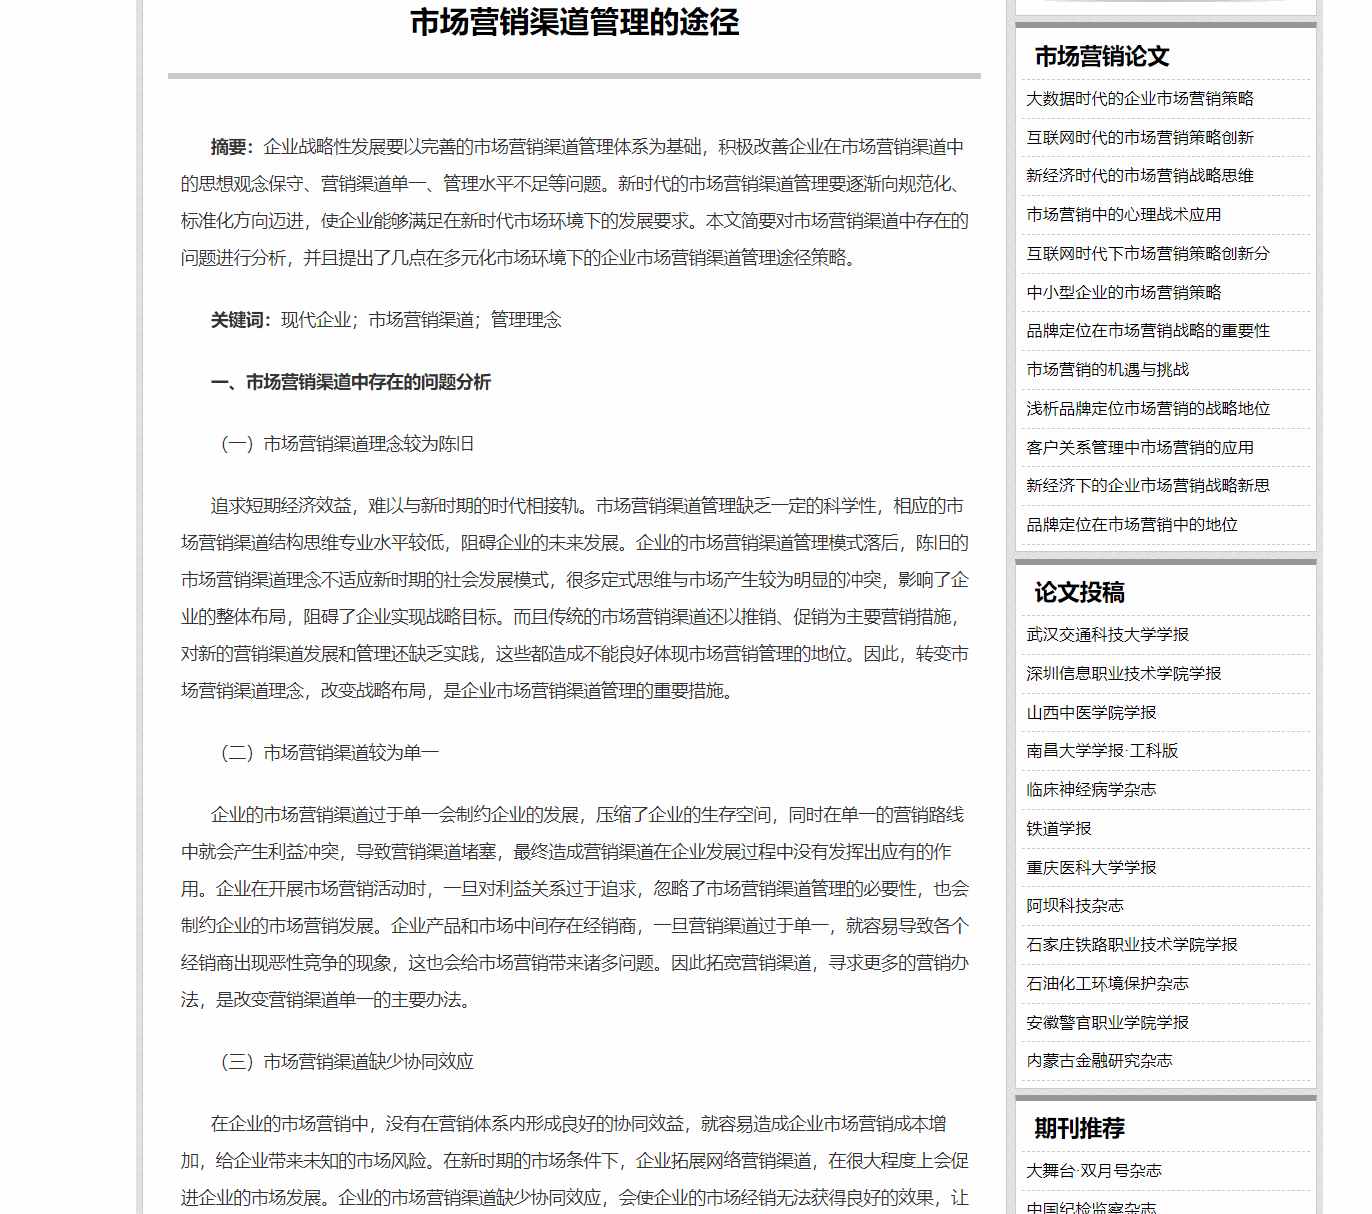 贰笔中文写作助手(多功能写作助手软件)  v1.0绿色版